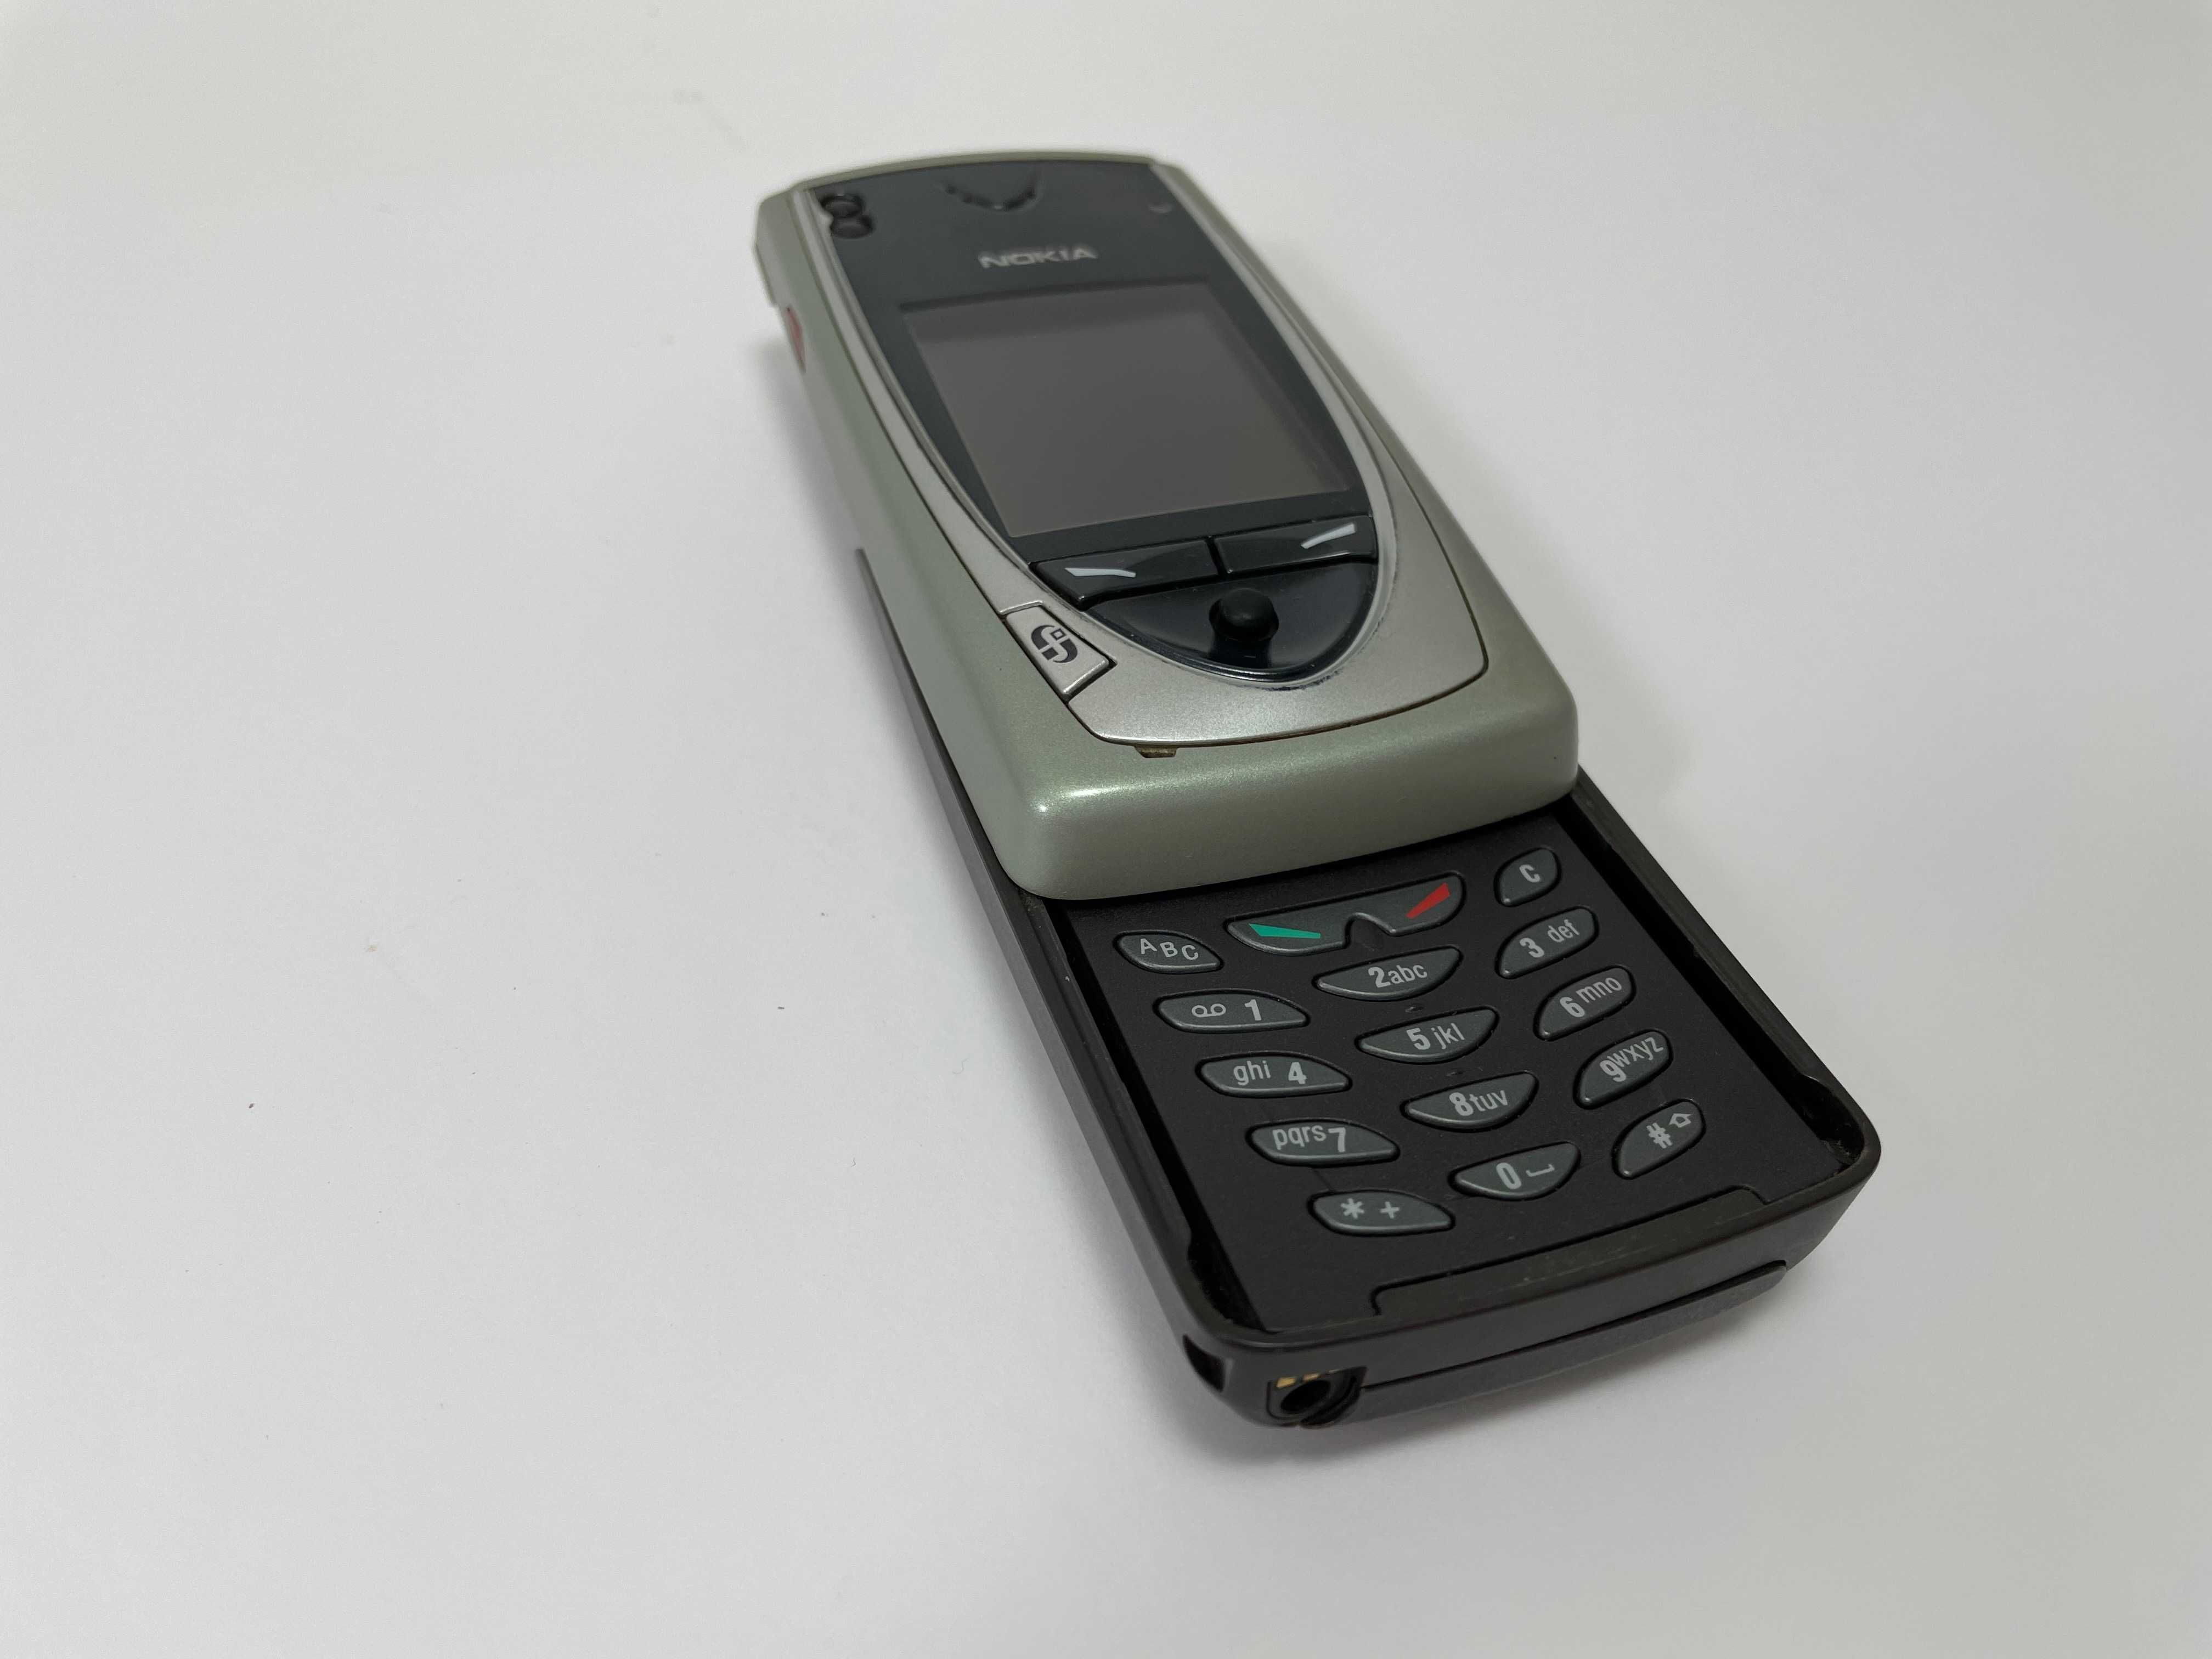 Nokia 7650 Slide Original